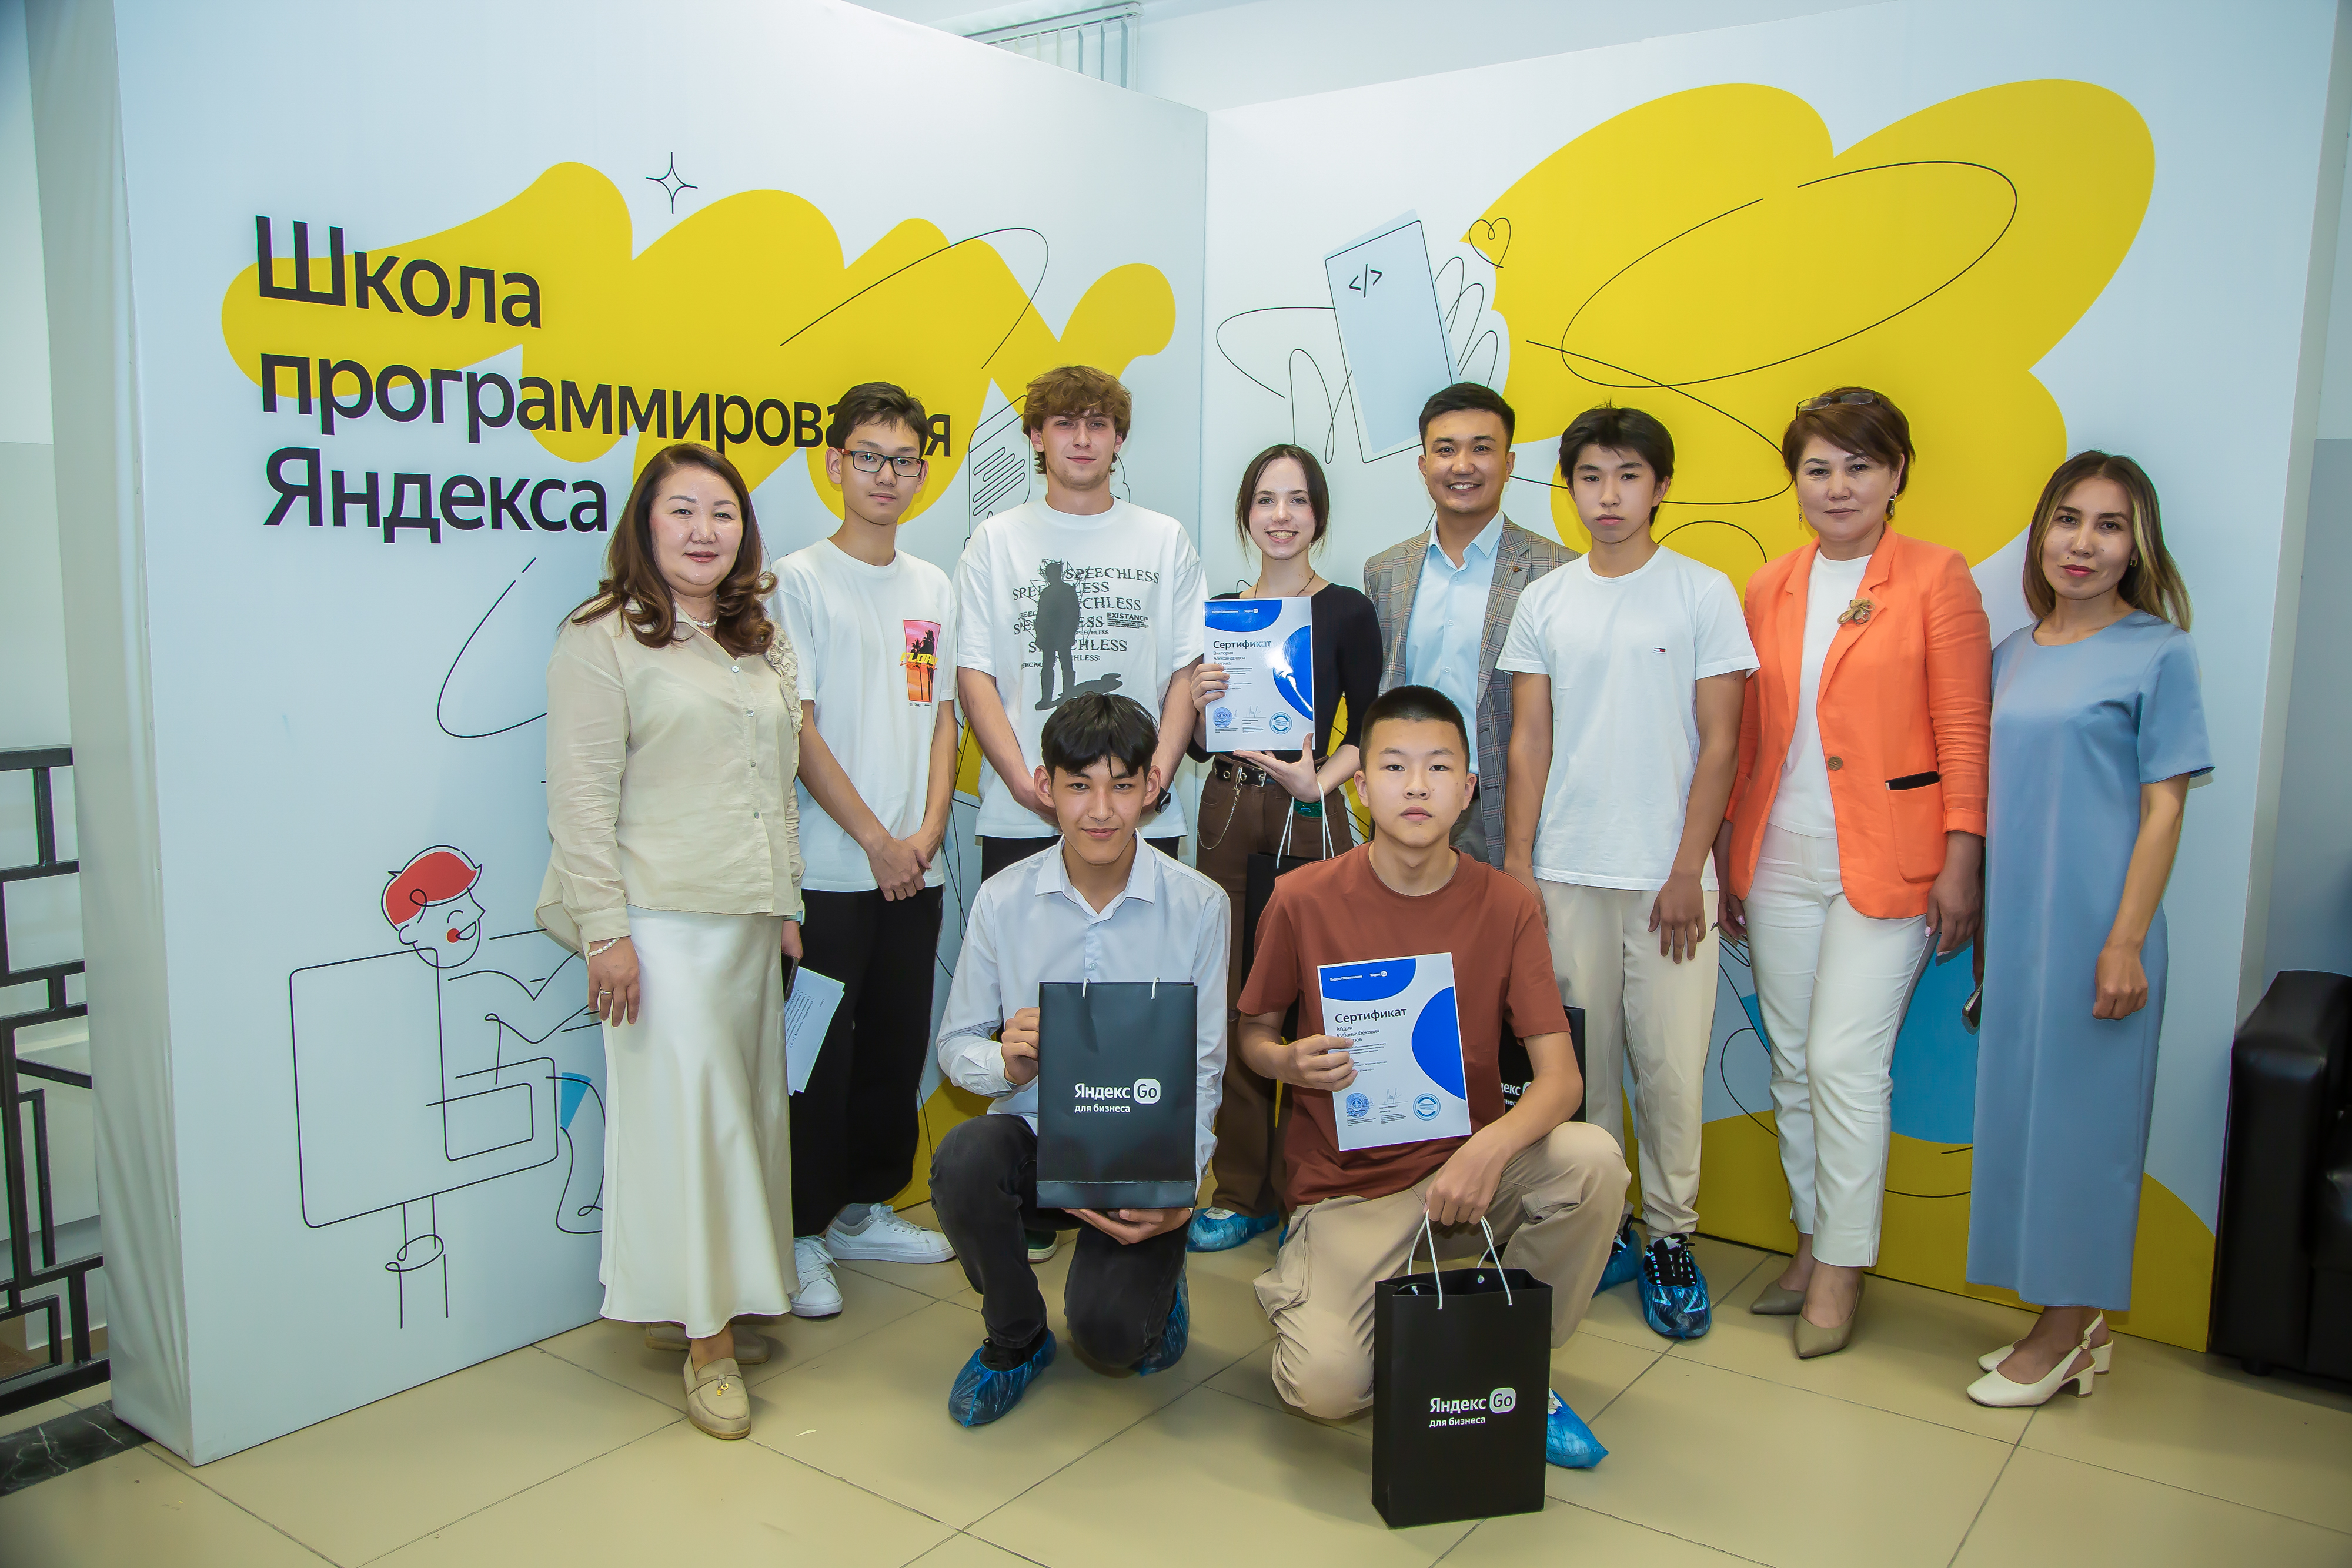 Выпускной «Яндекс школы» в Кыргызстане: путь к IT-будущему